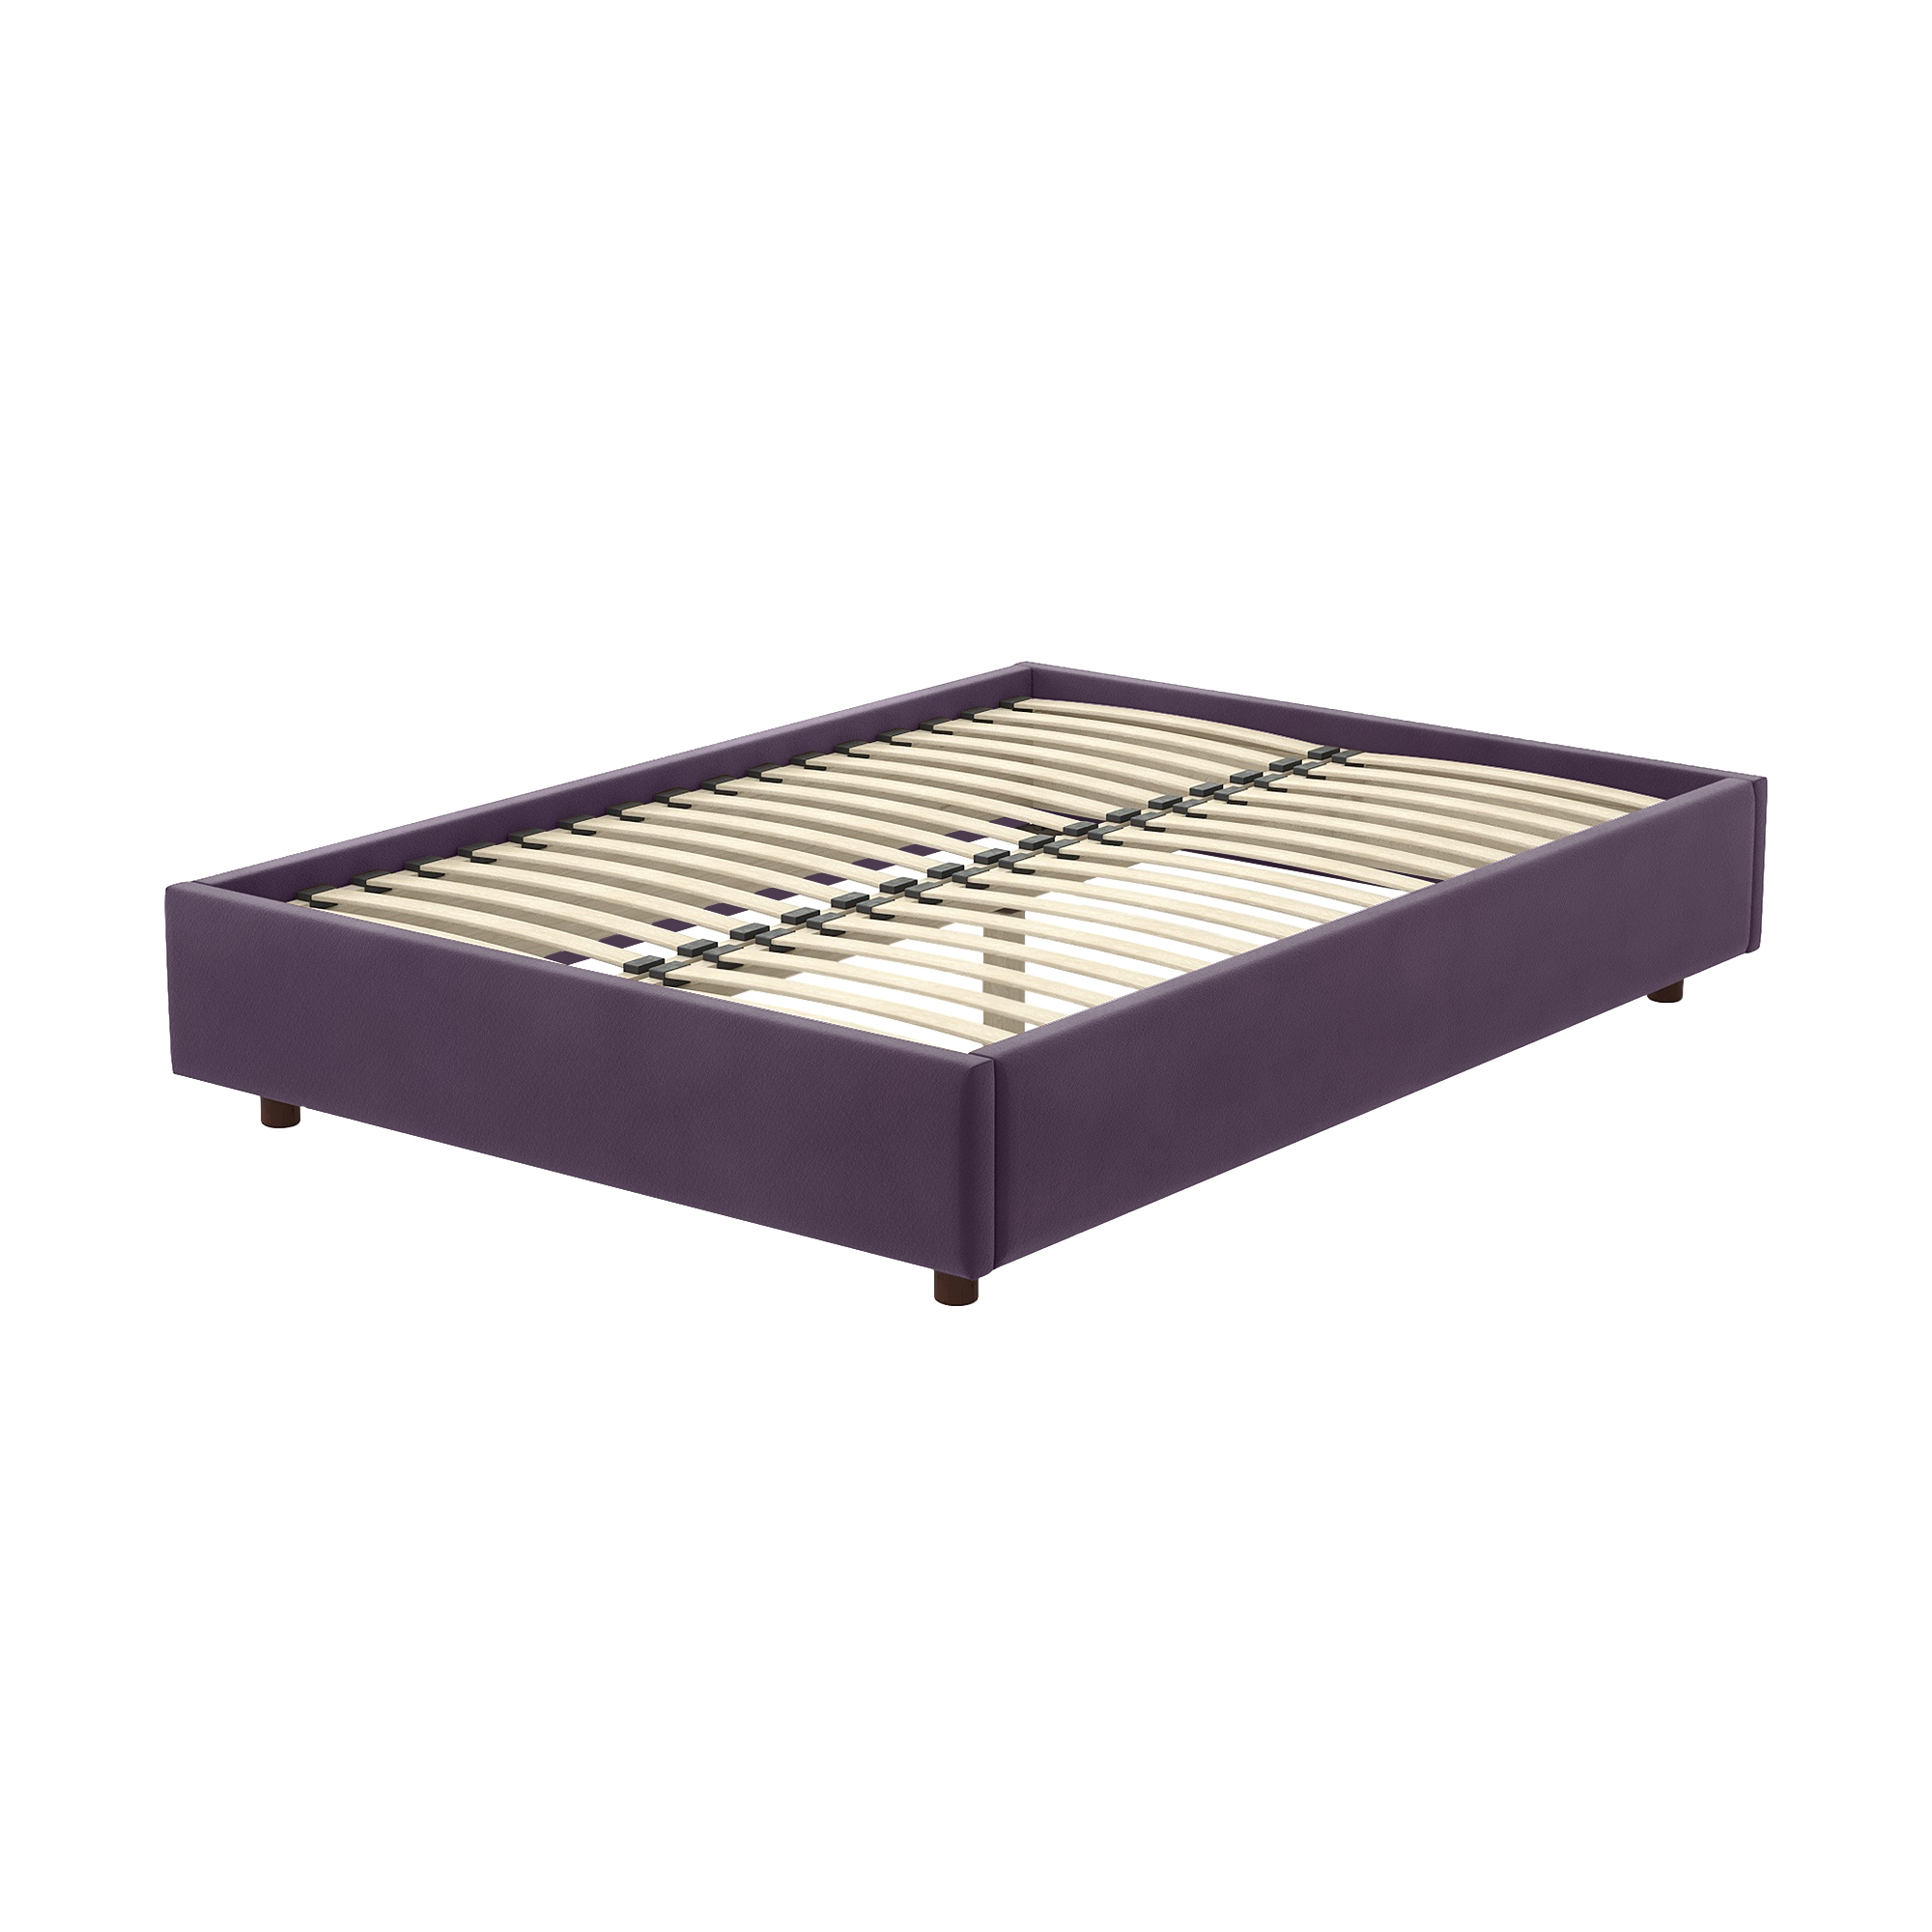 Кровать AS Саманта 160x200 орех/виола, цвет фиалковый, размер 200х160х30 - фото 1